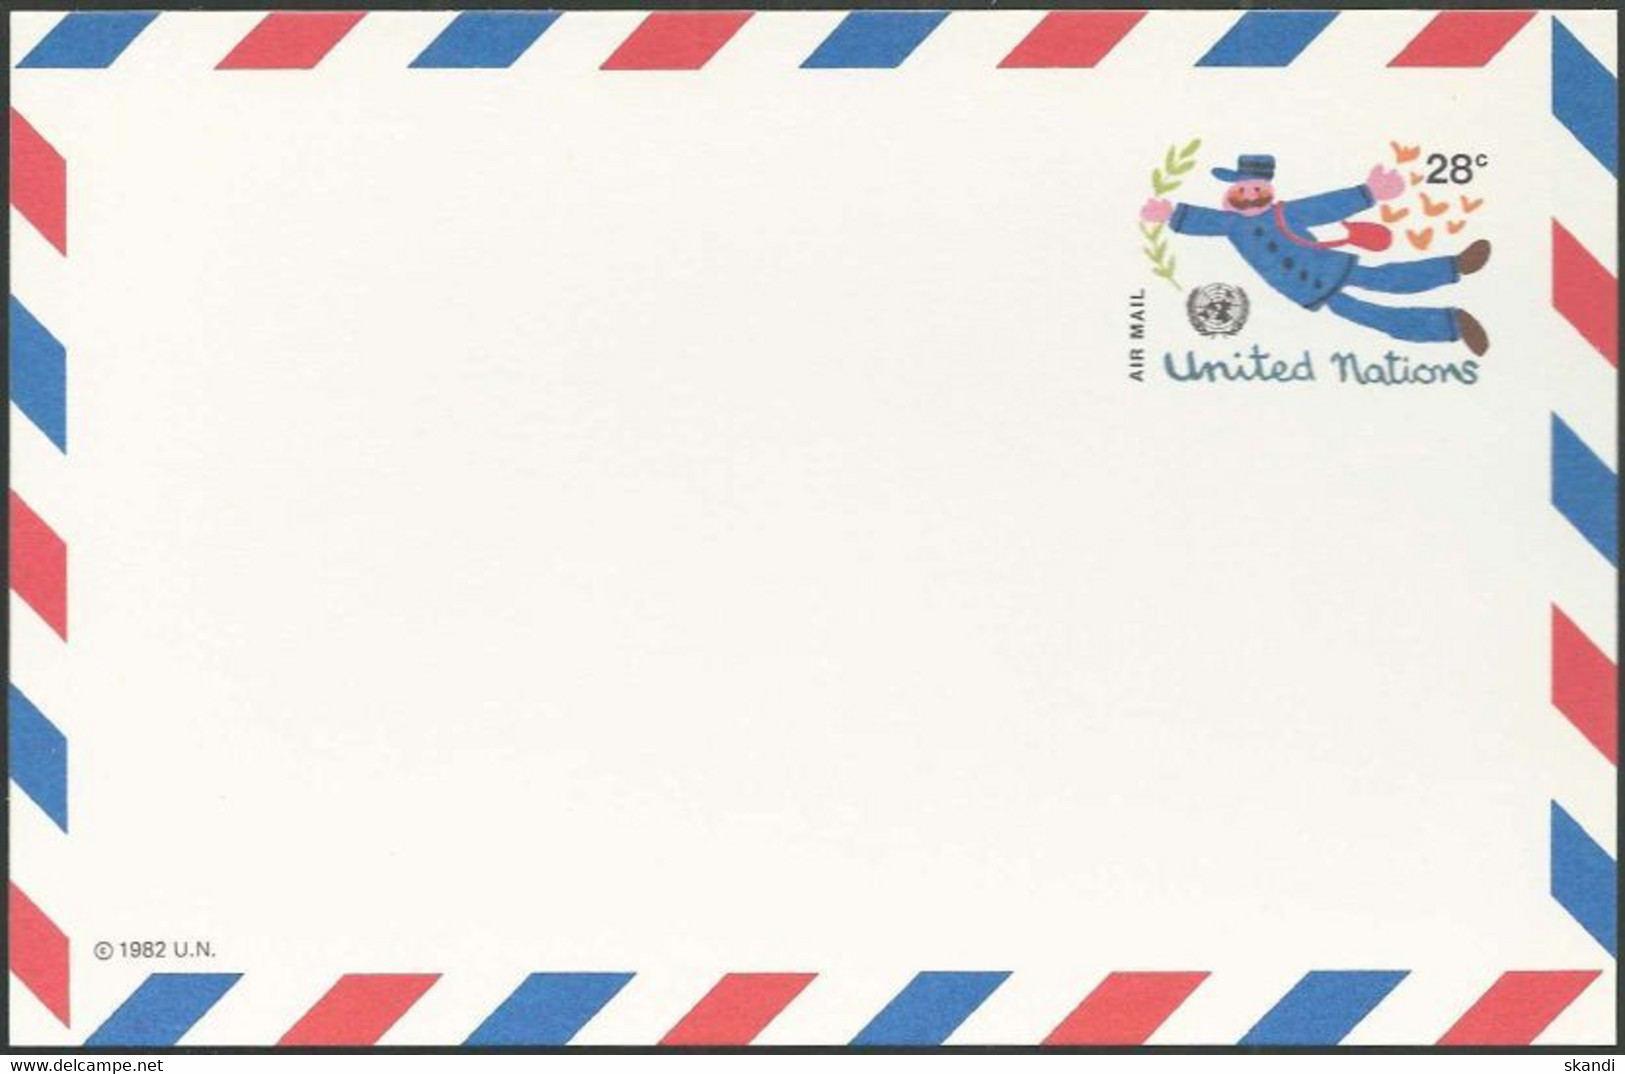 UNO NEW YORK 1982 Mi-Nr. LP 12 Ganzsache Luftpostkarte Ungebraucht - Poste Aérienne